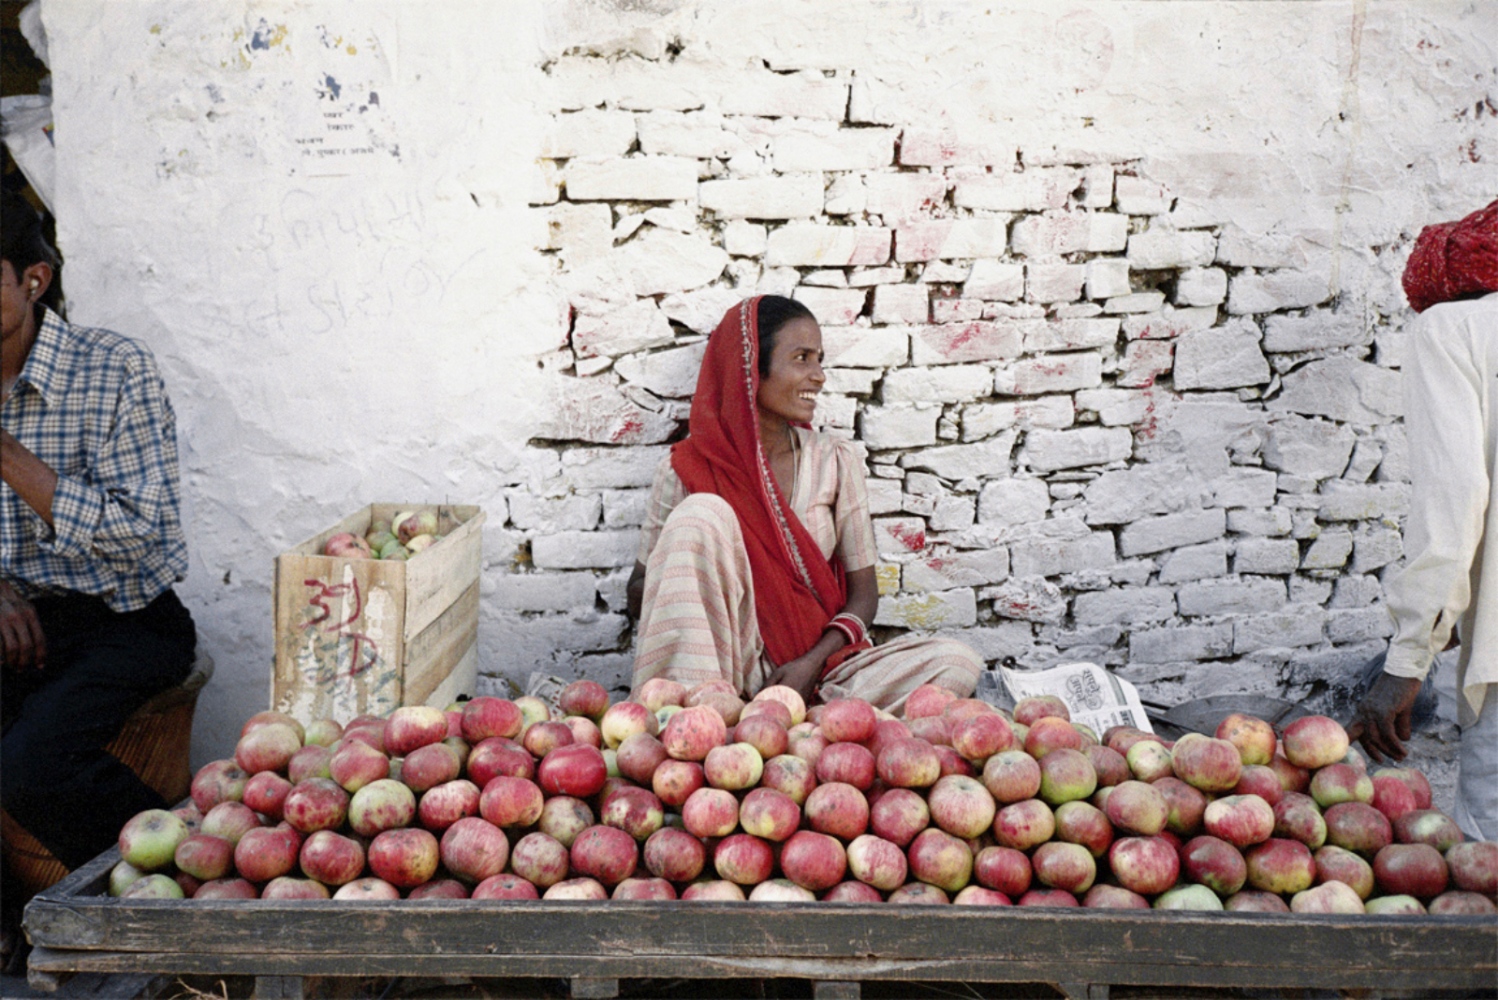 India -  Lady and Apples, Pushkar, India, November 2003 